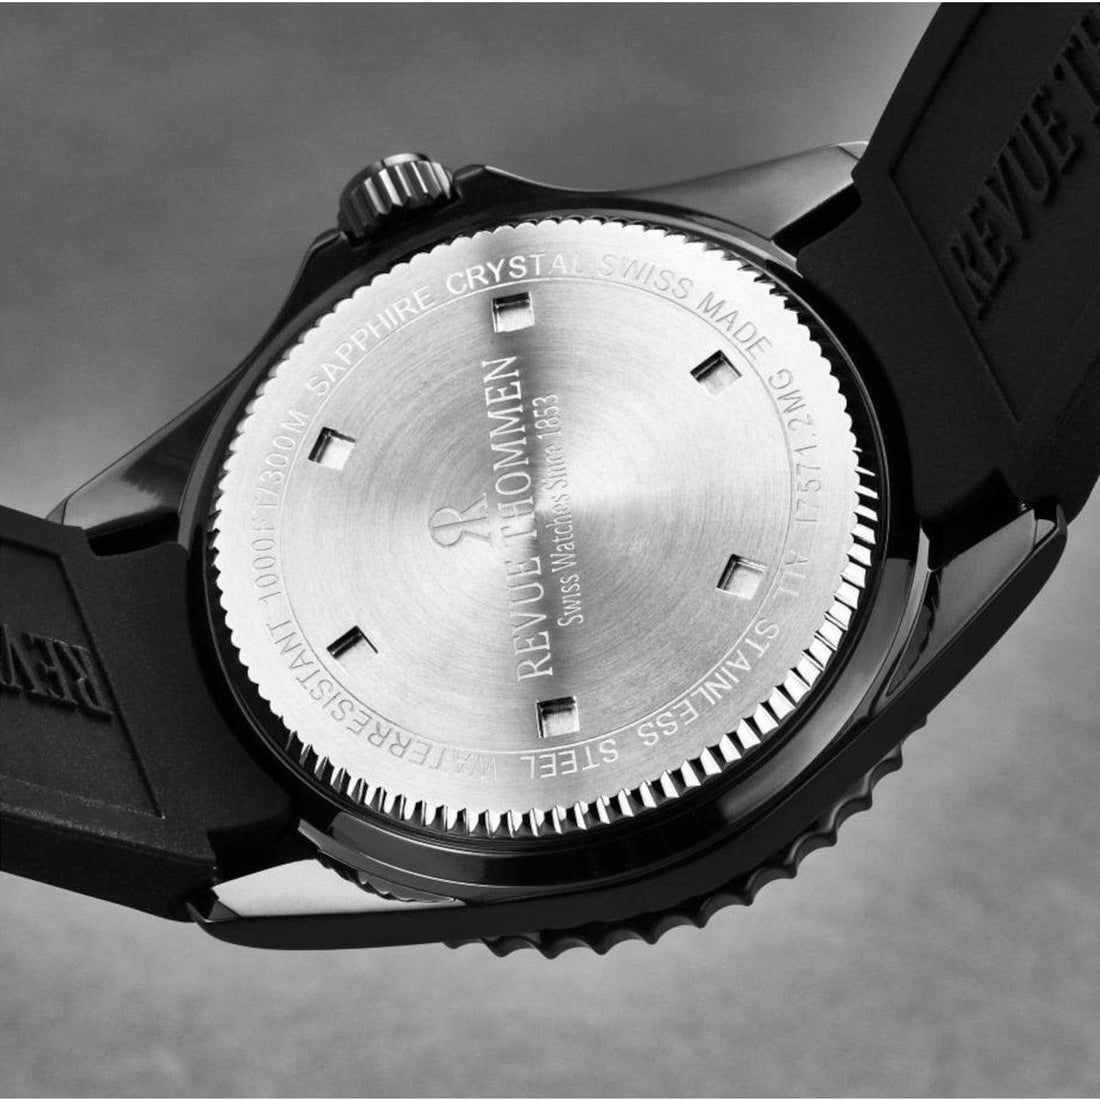 Revue Thommen 17571.2877 Men's 'Diver' Black Dial Rubber Strap Swiss Automatic Watch